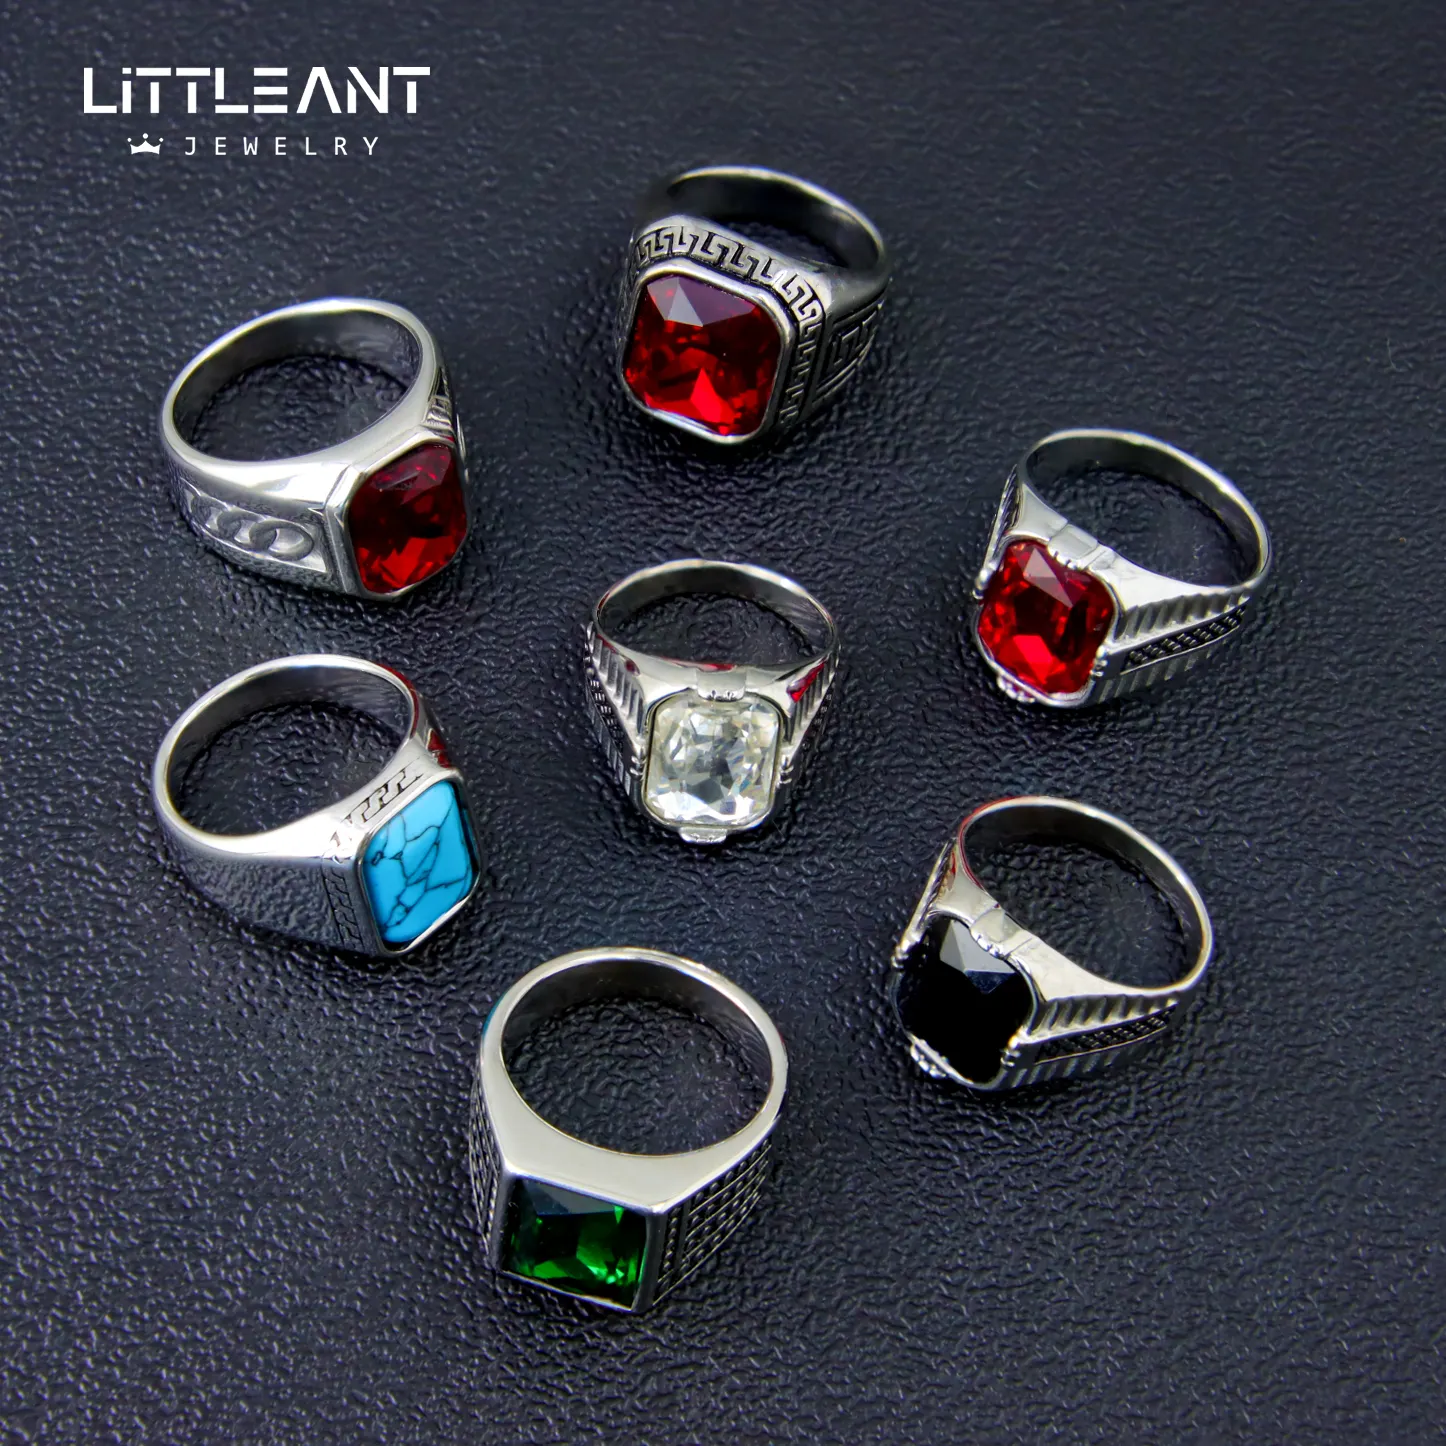 Little Ant New Luxury Red & Black Zircon Hiphop Jewelry Ring Anillo de acero inoxidable para hombre al por mayor